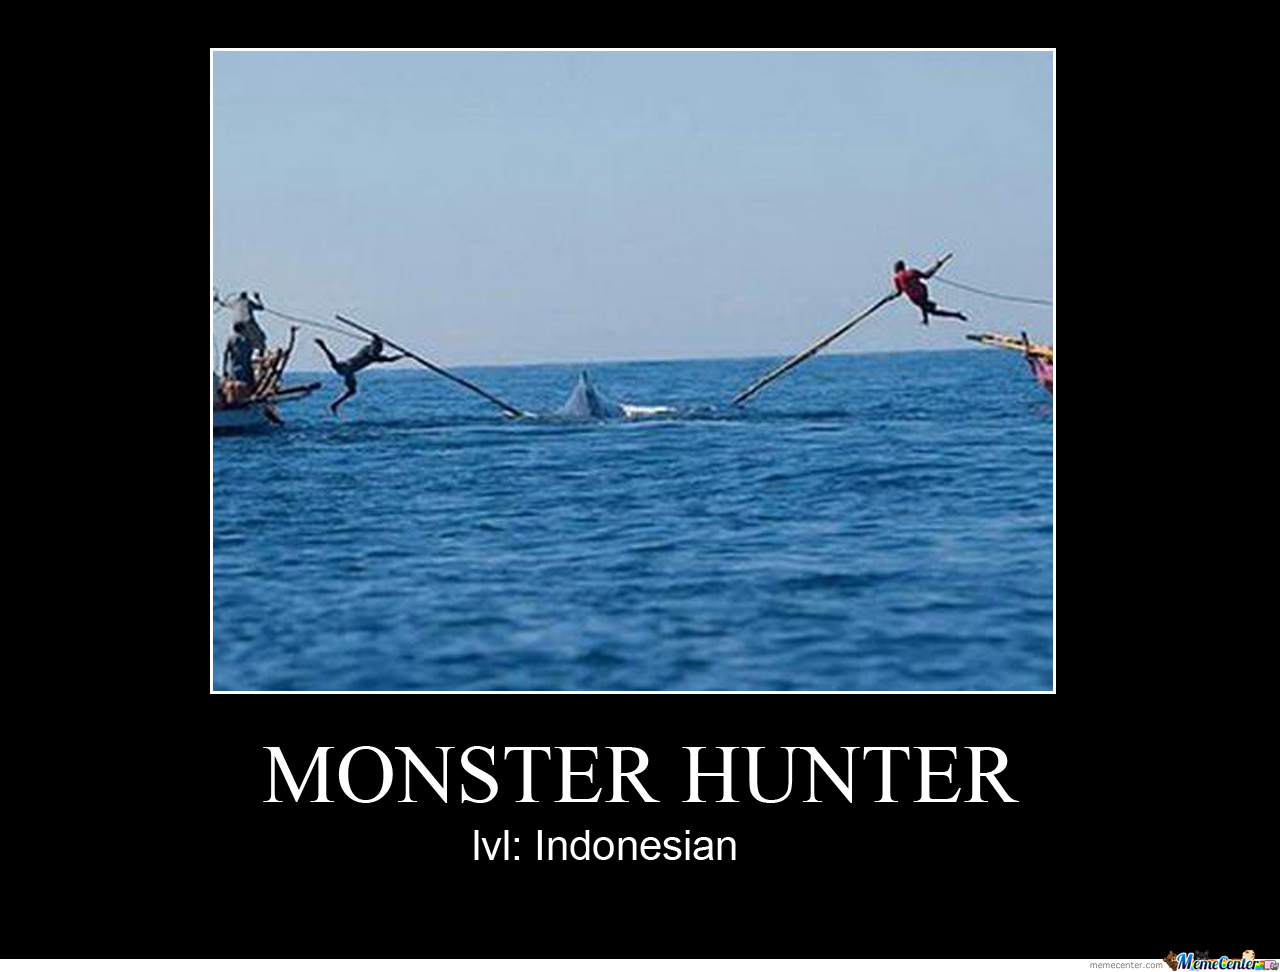 Monster hunter , indonesian style - meme